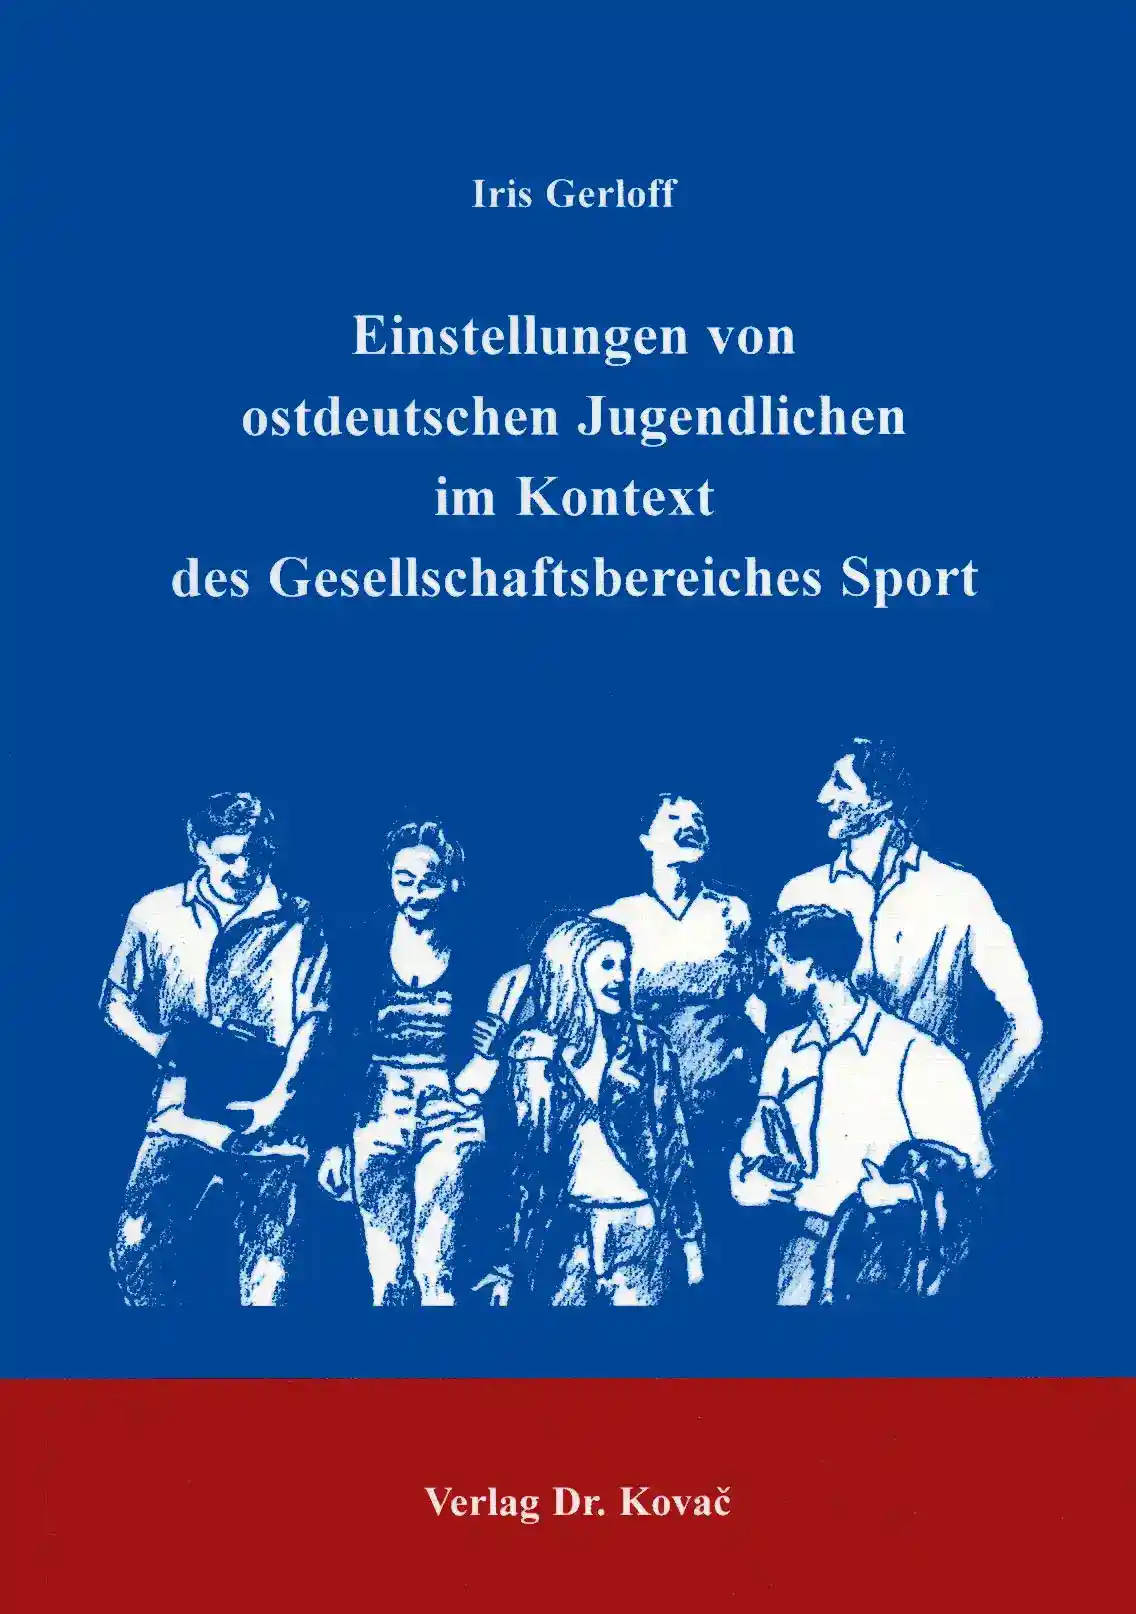  Dissertation: Einstellungen von ostdeutschen Jugendlichen im Kontext des Gesellschaftsbereiches Sport